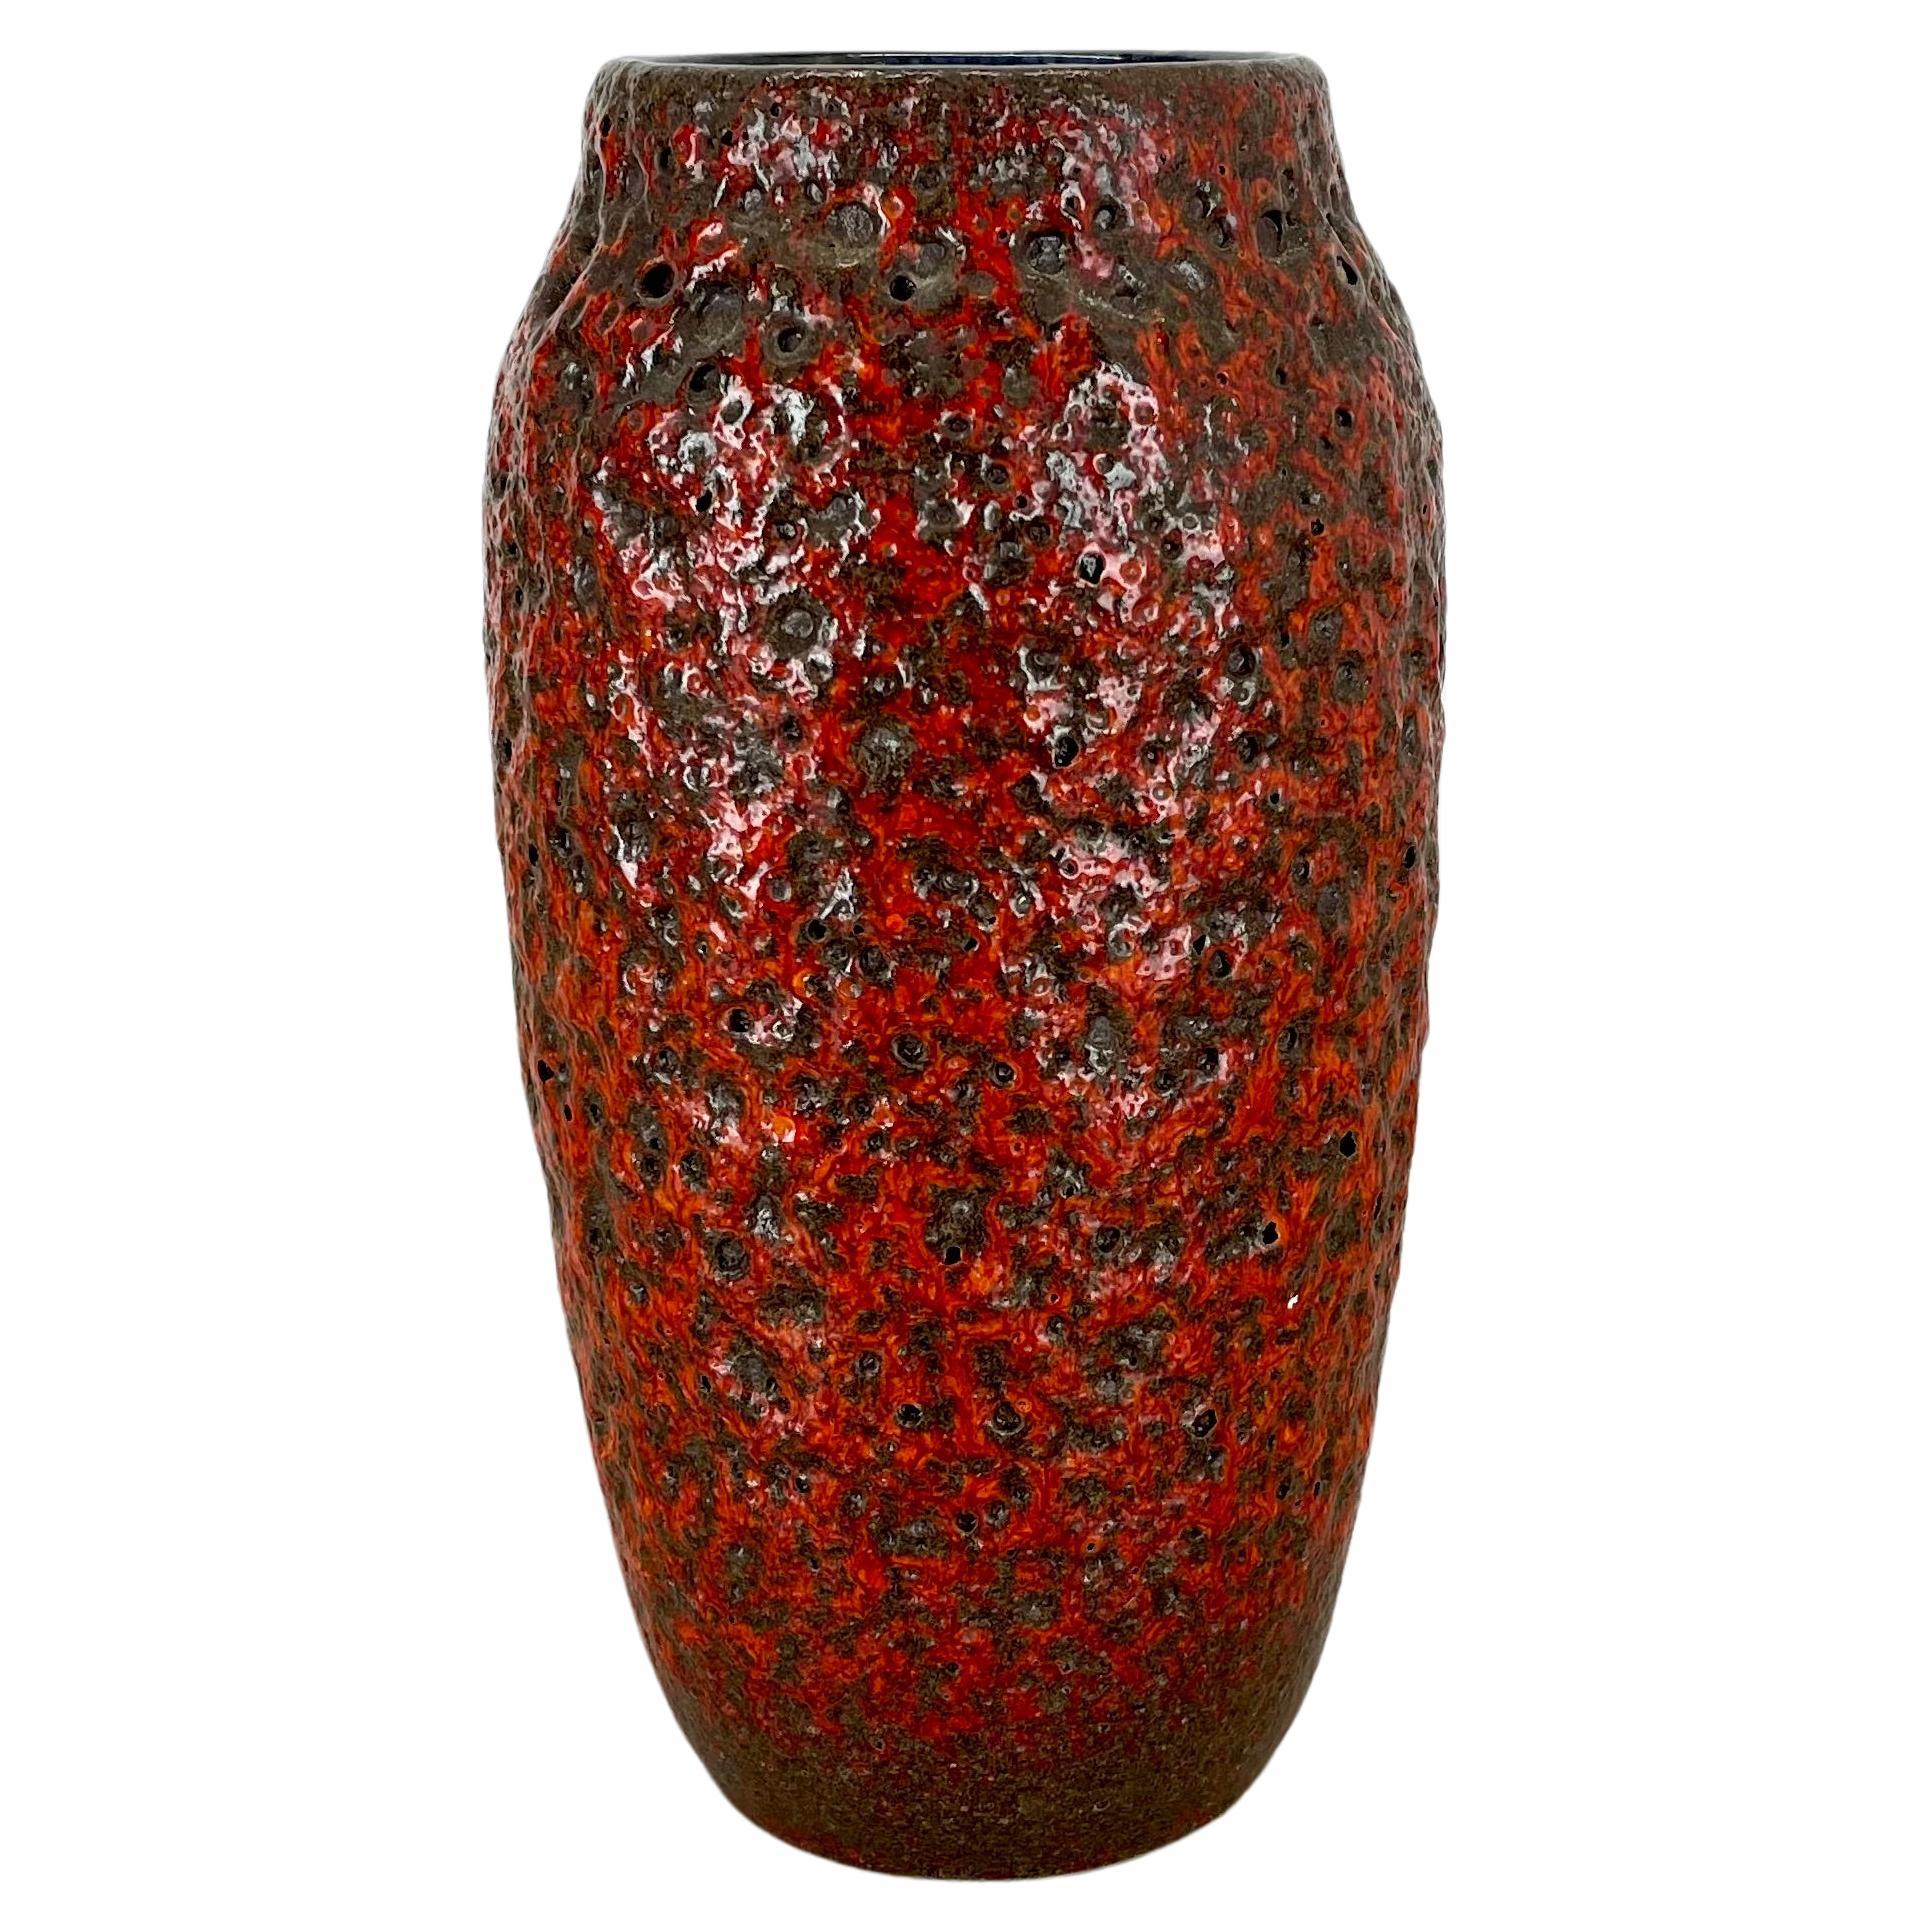 Vase Super Color red Crusty Fat Lava Multi-Color Scheurich, Allemagne WGP, années 1970